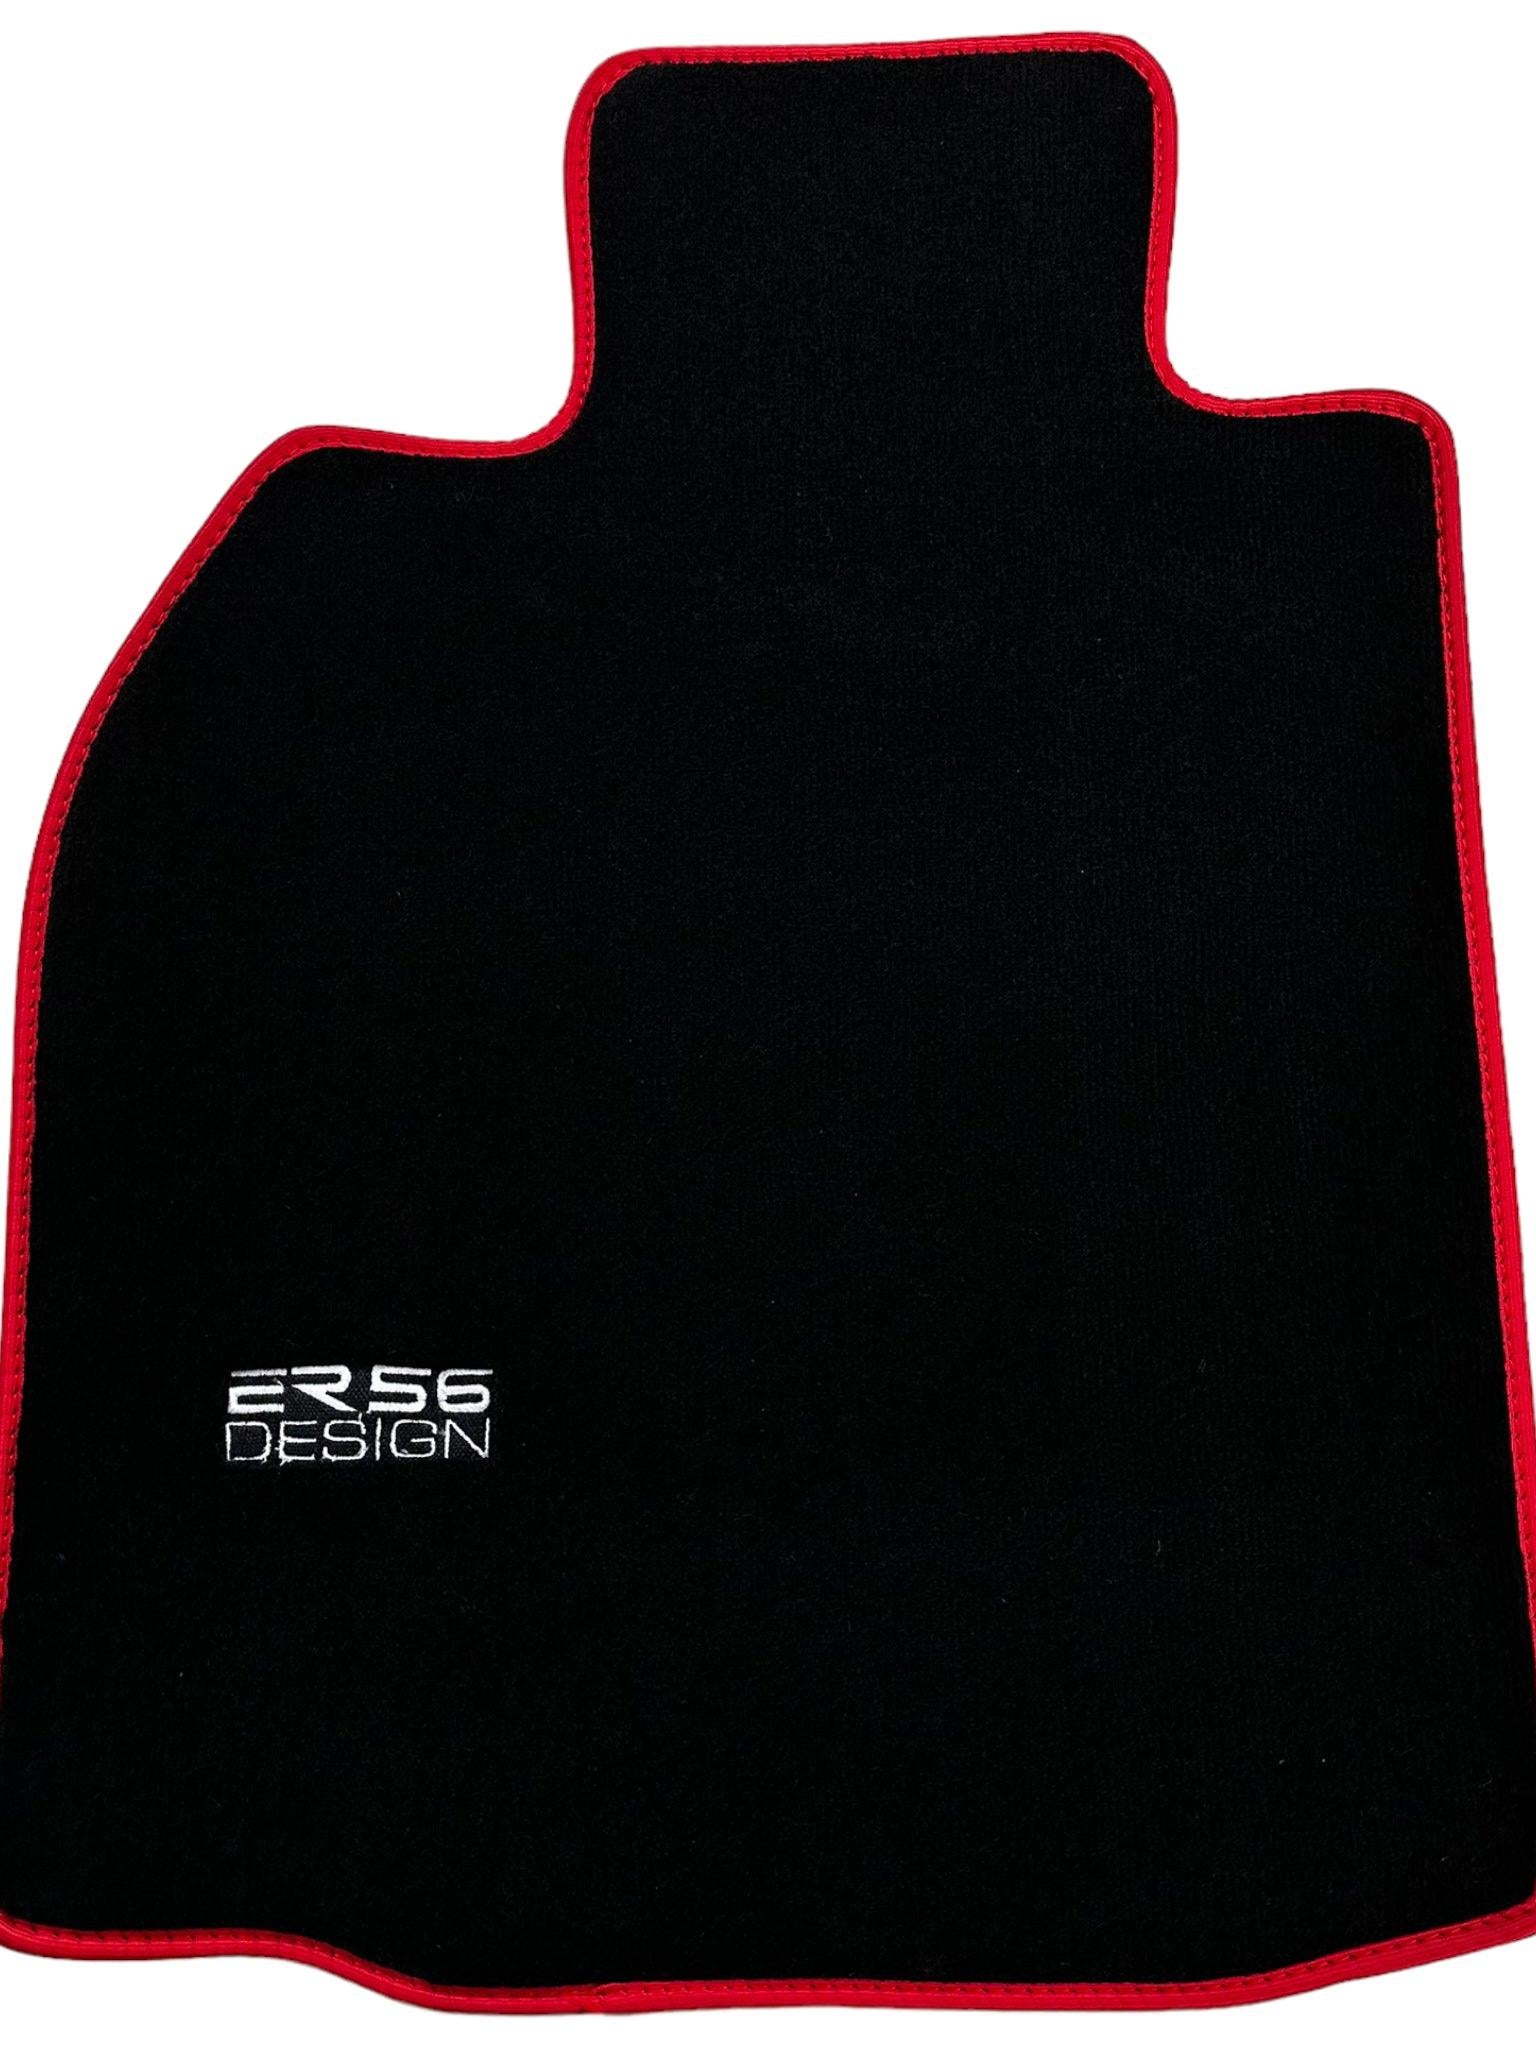 Black Floor Mats for Porsche 911 - 997 (2004-2012) ER56 Design